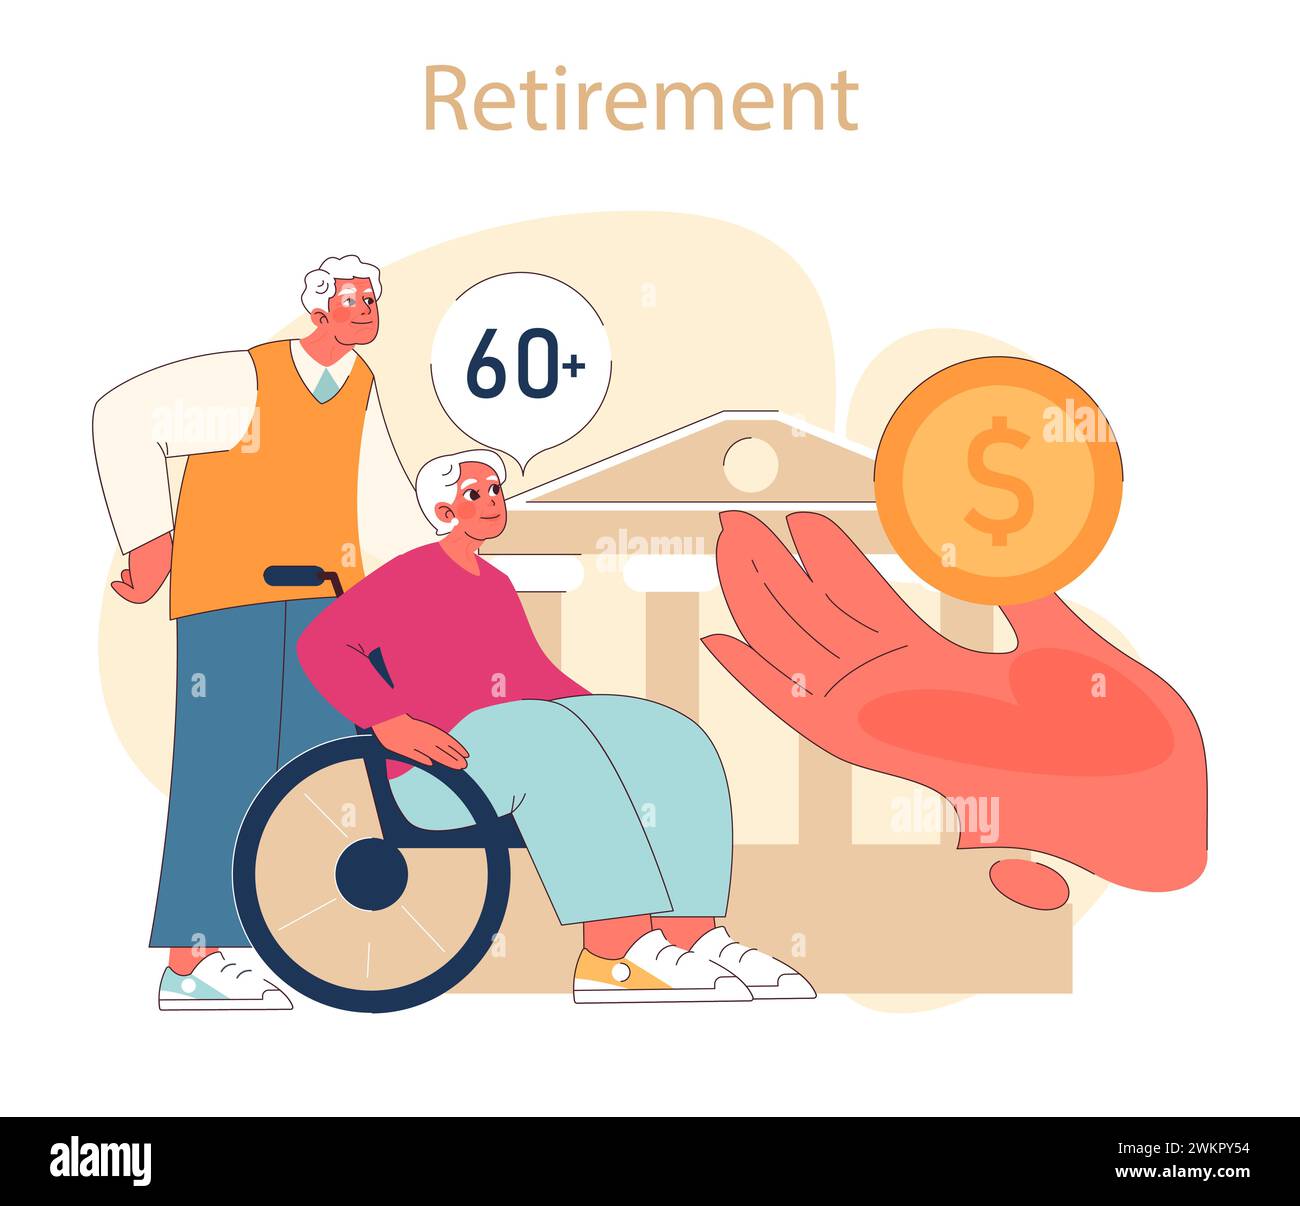 Concetto di preparazione al pensionamento. Una coppia senior si concentra sulla salute finanziaria per la loro vita post-pensionamento, simboleggiando la preparazione e il sostegno. Illustrazione Vettoriale